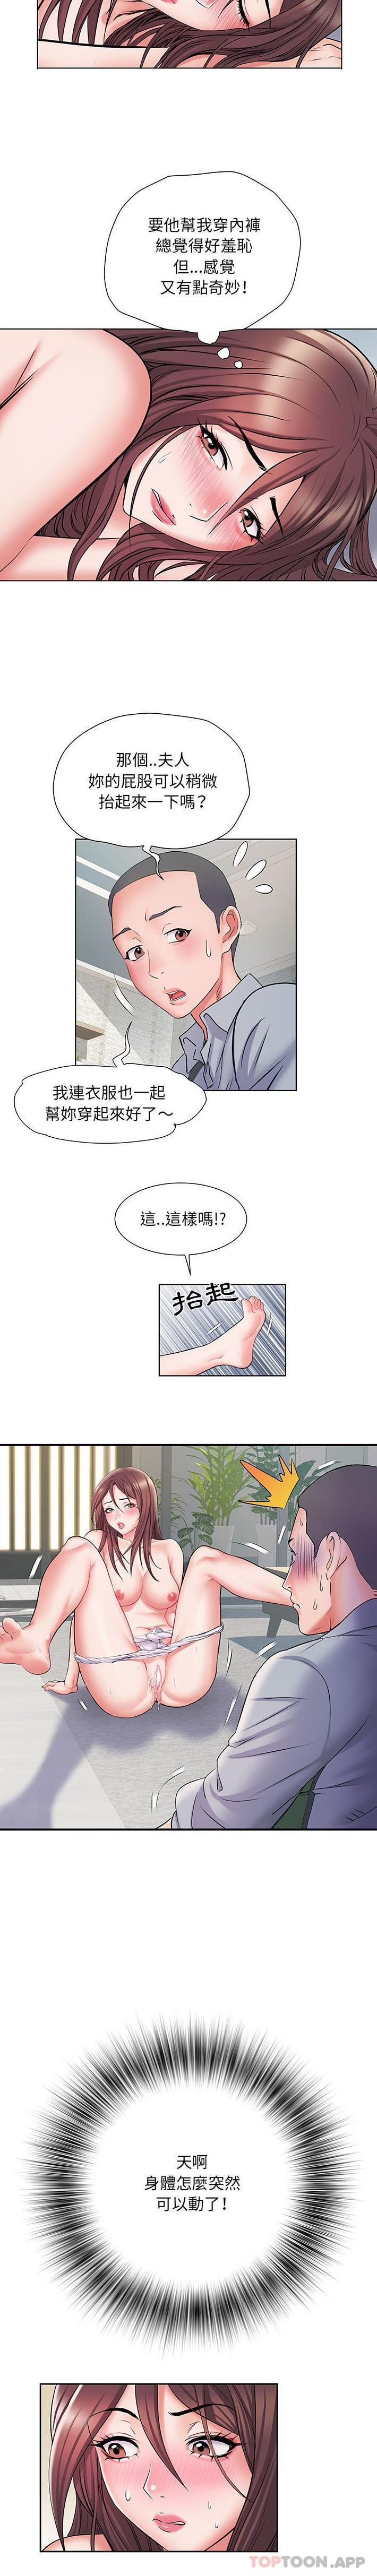 韩国污漫画 不良二等兵 第8话 13